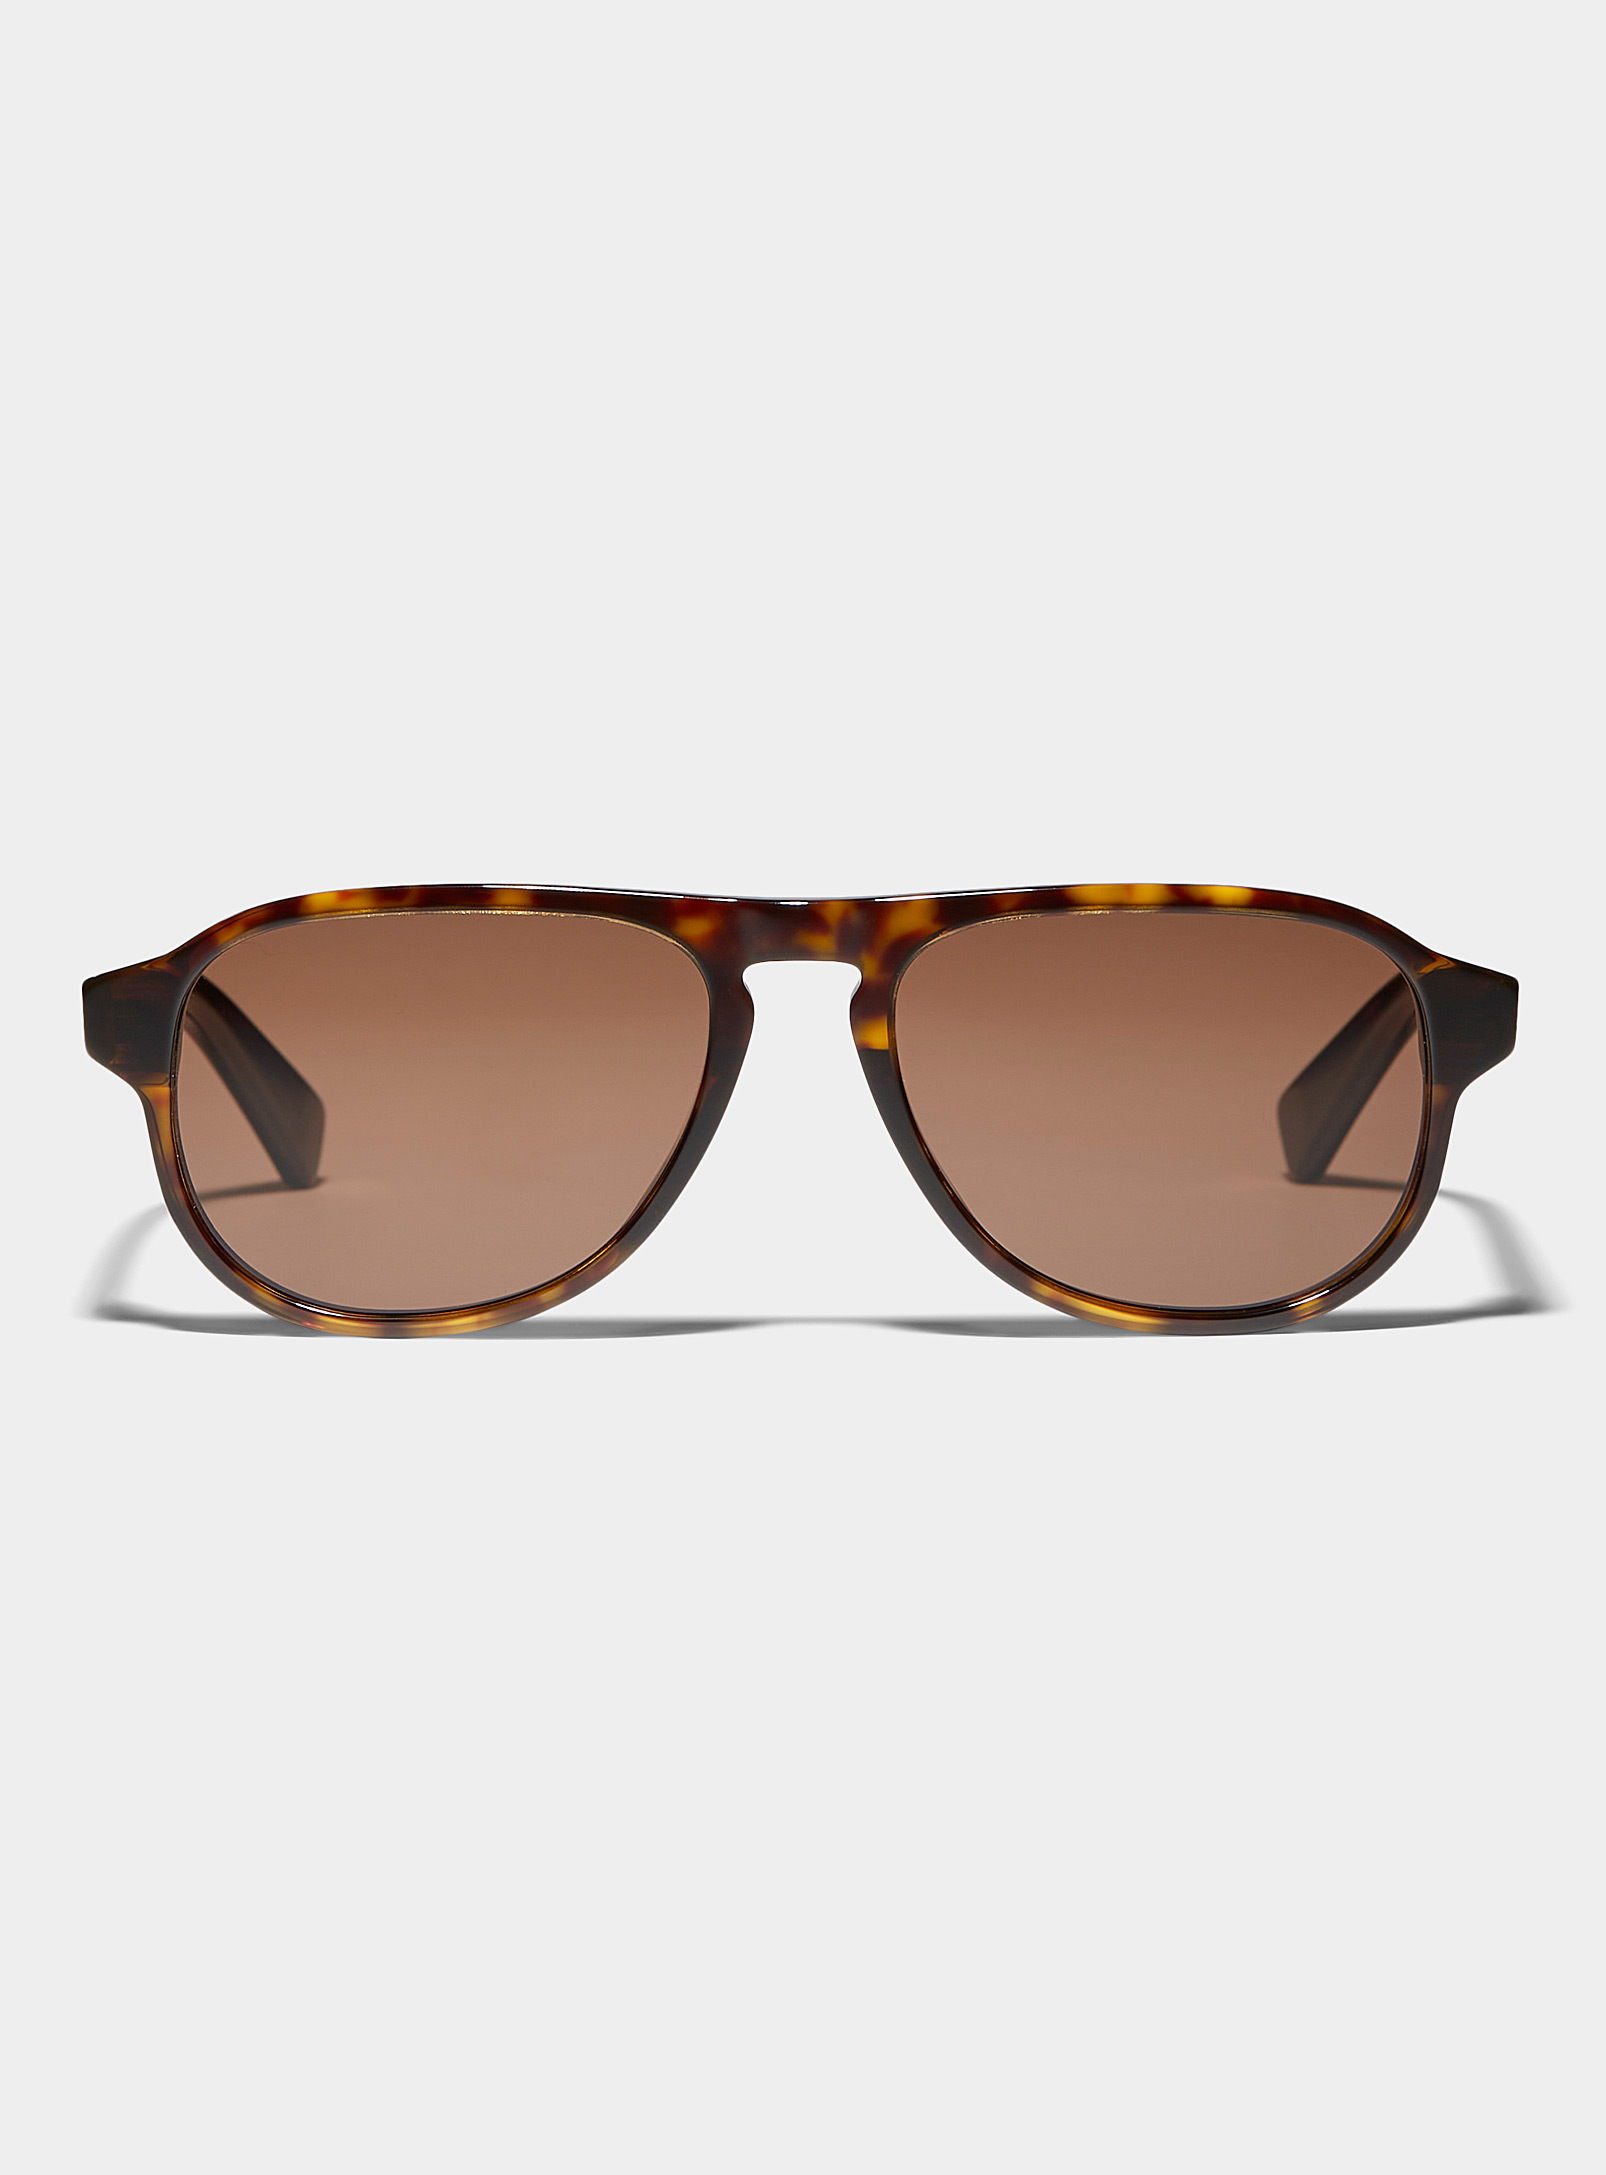 Bottega Veneta - Turtle shell aviator sunglasses